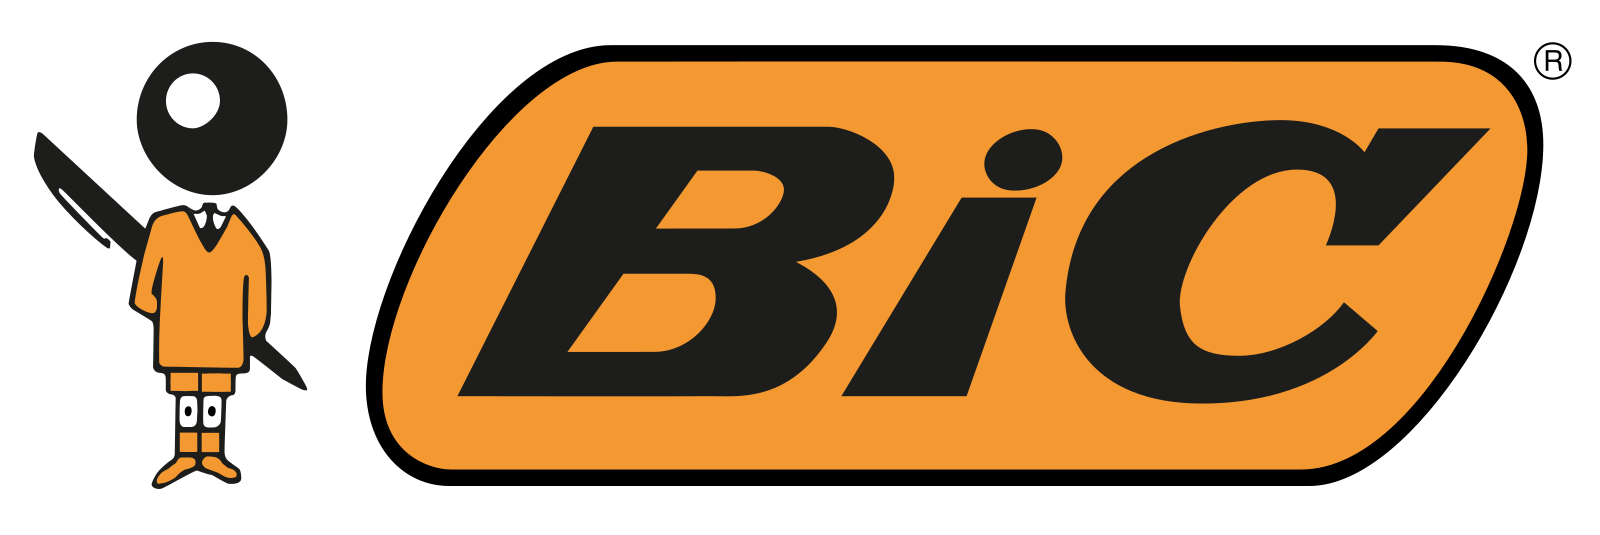 bic logo 2 - Bic Logo